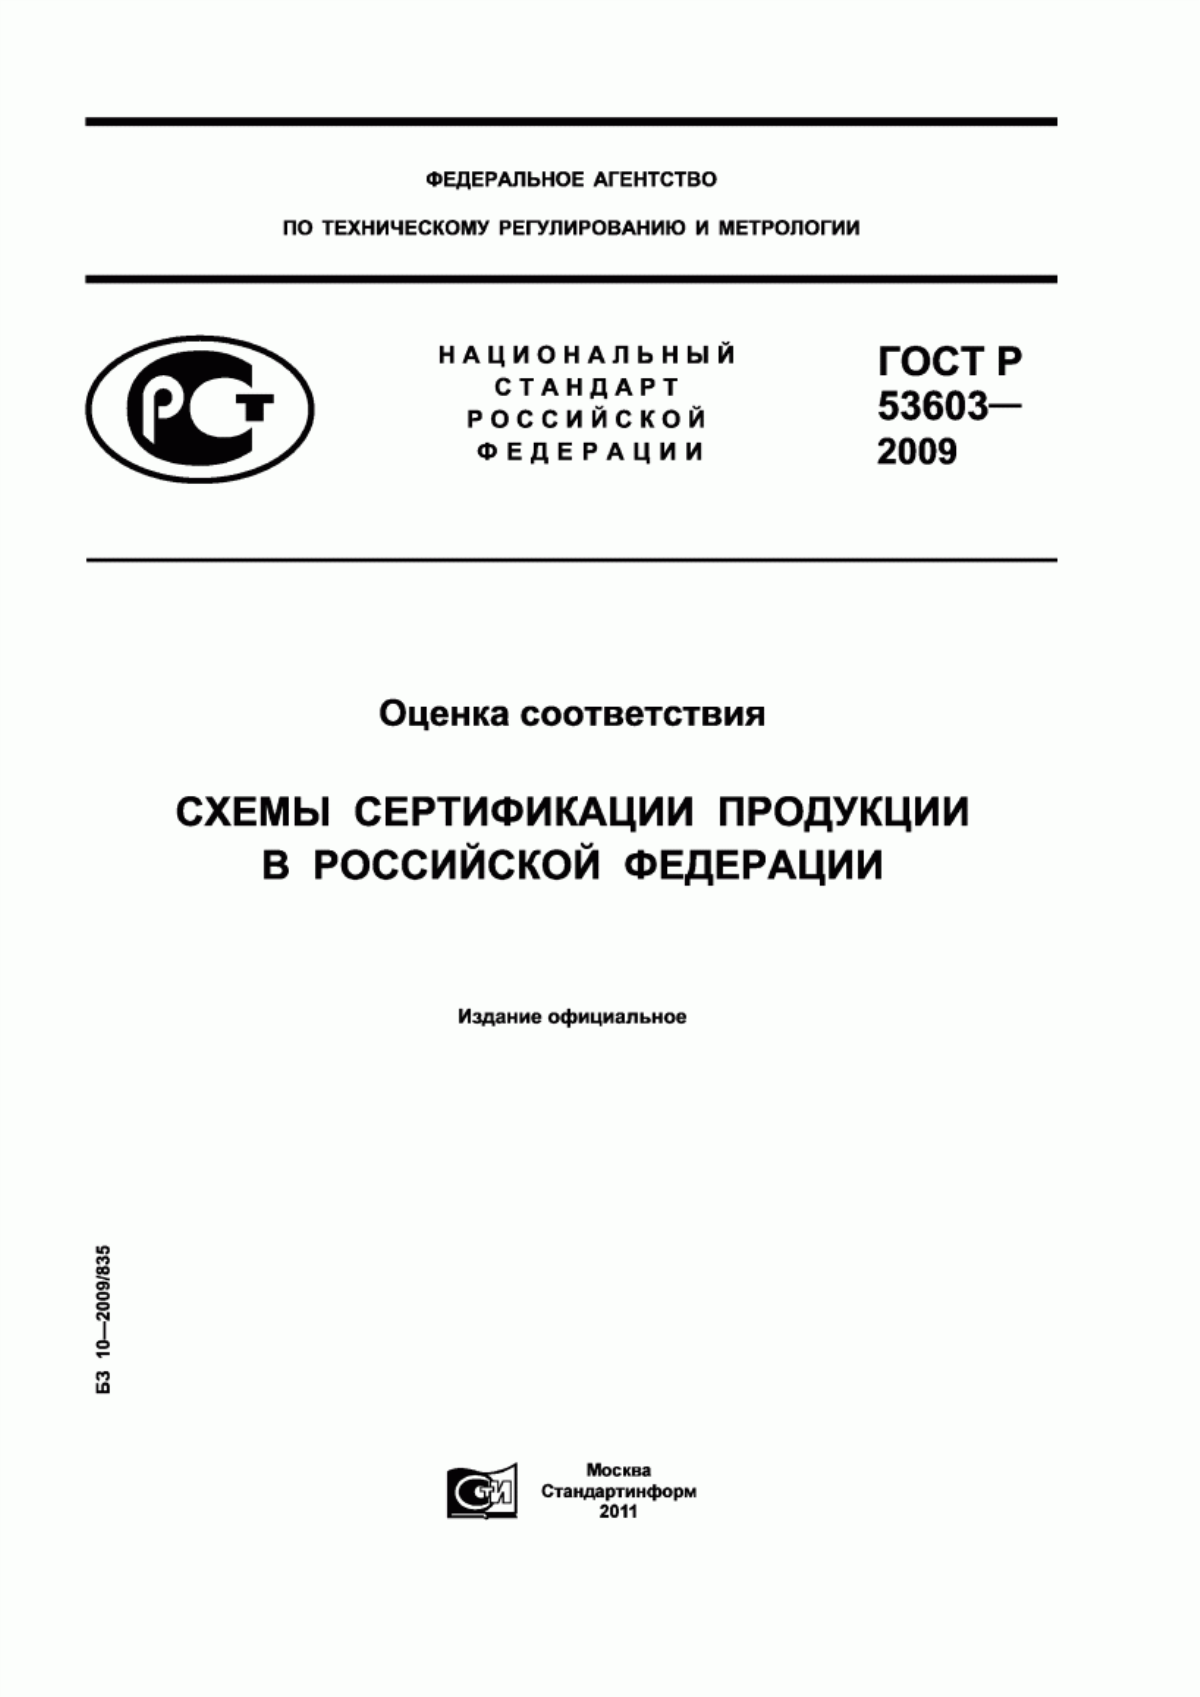 ГОСТ Р 53603-2009 Оценка соответствия. Схемы сертификации продукции в Российской Федерации